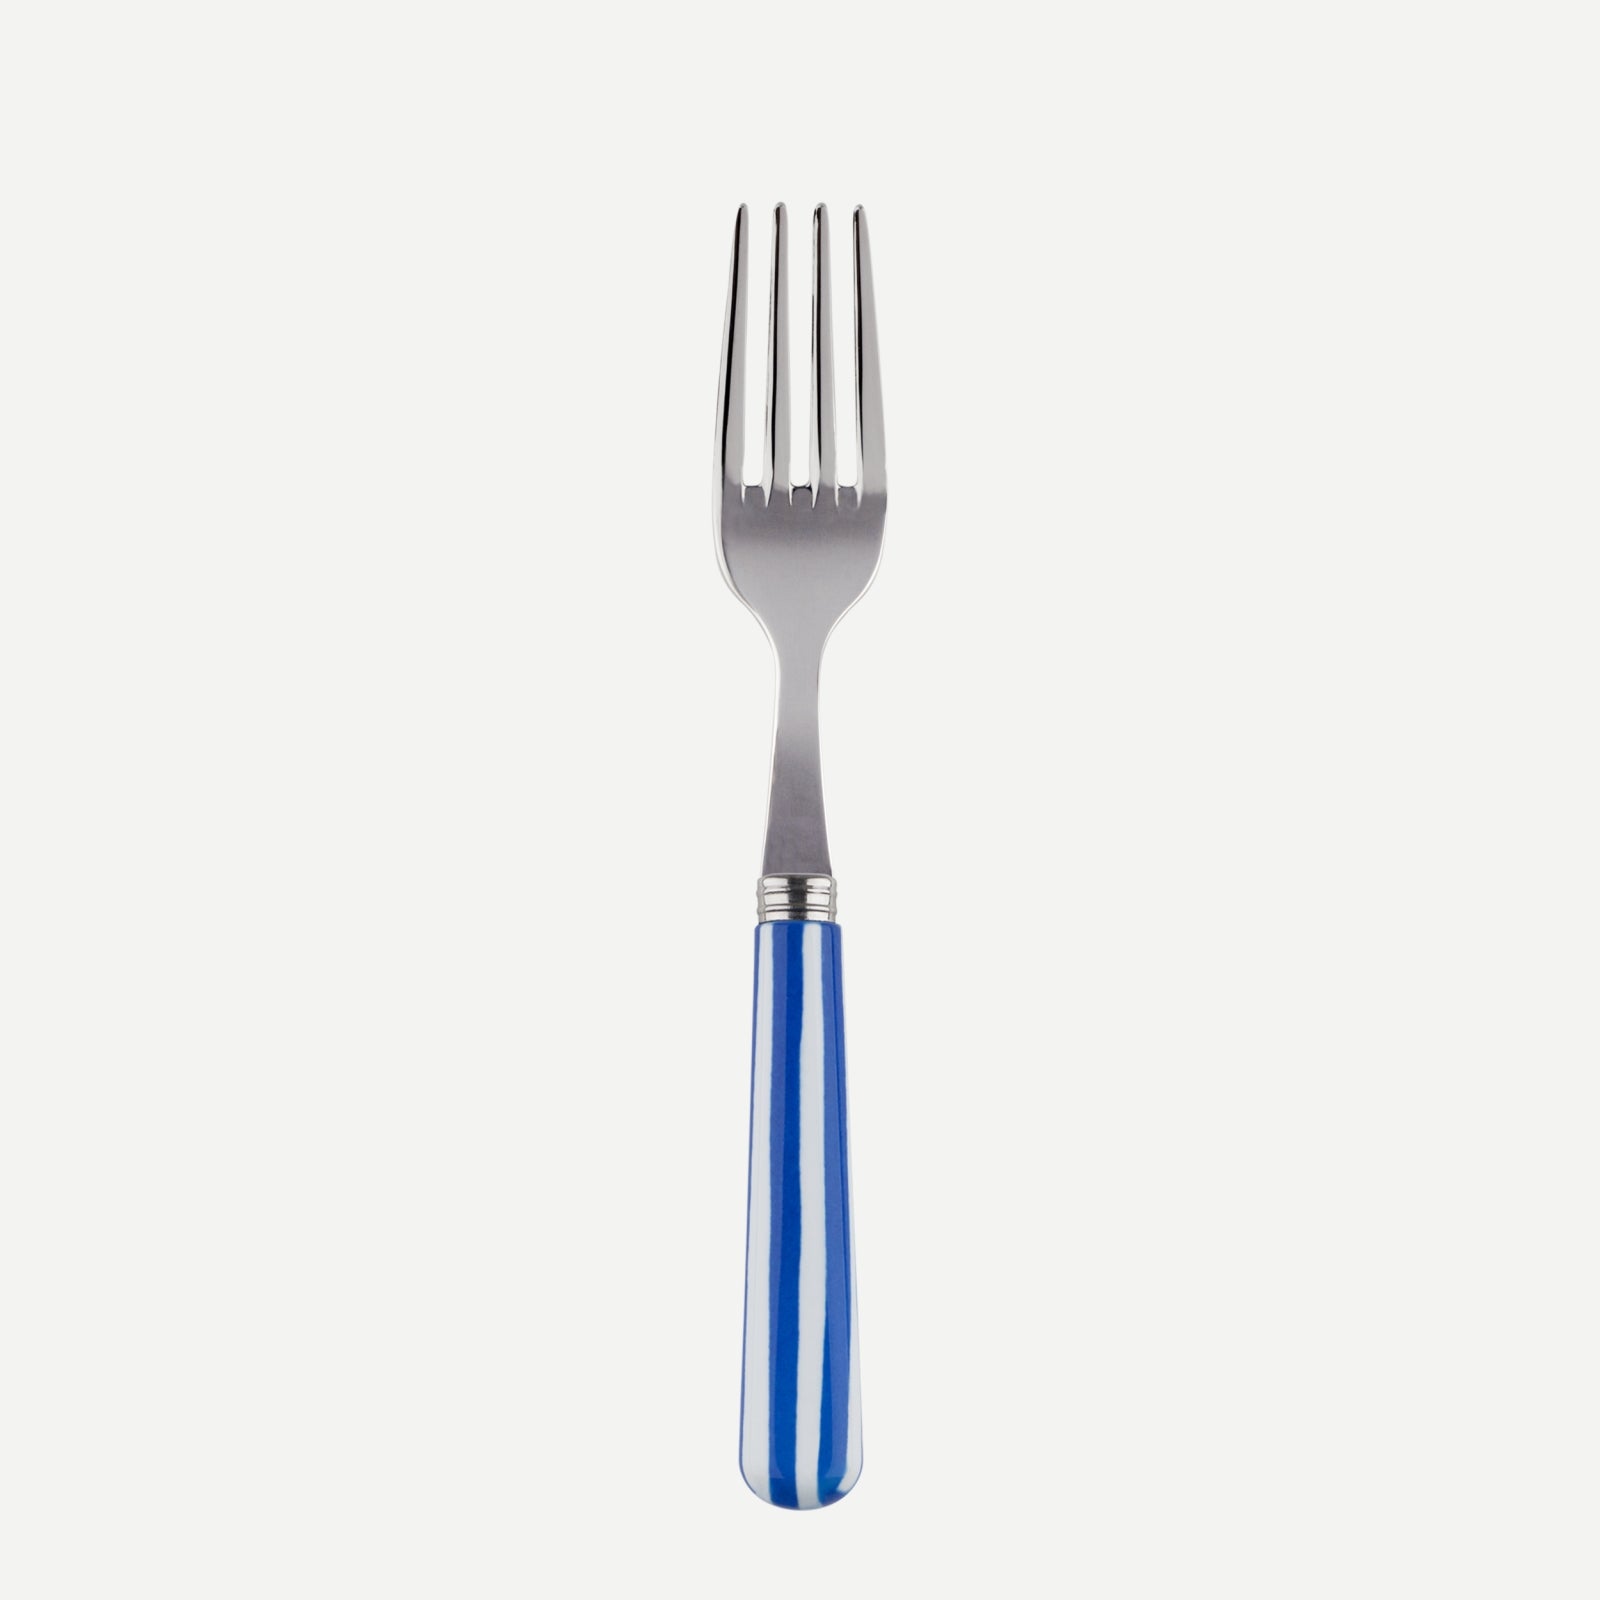 Petite fourchette - Transat - Bleu outremer